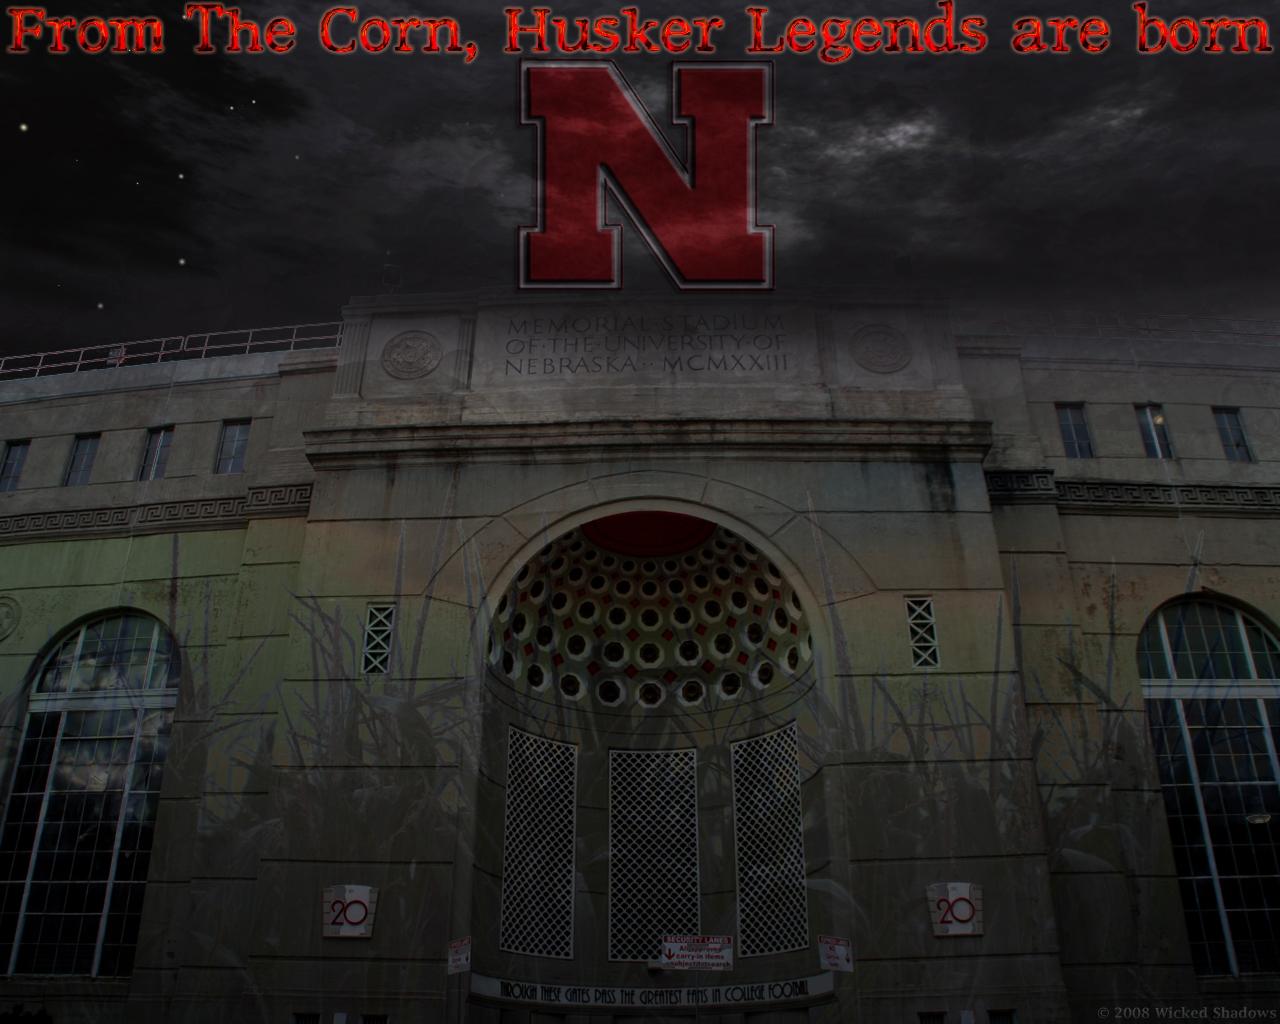 Nebraska Football Wallpaper - Nebraska Football - HD Wallpaper 